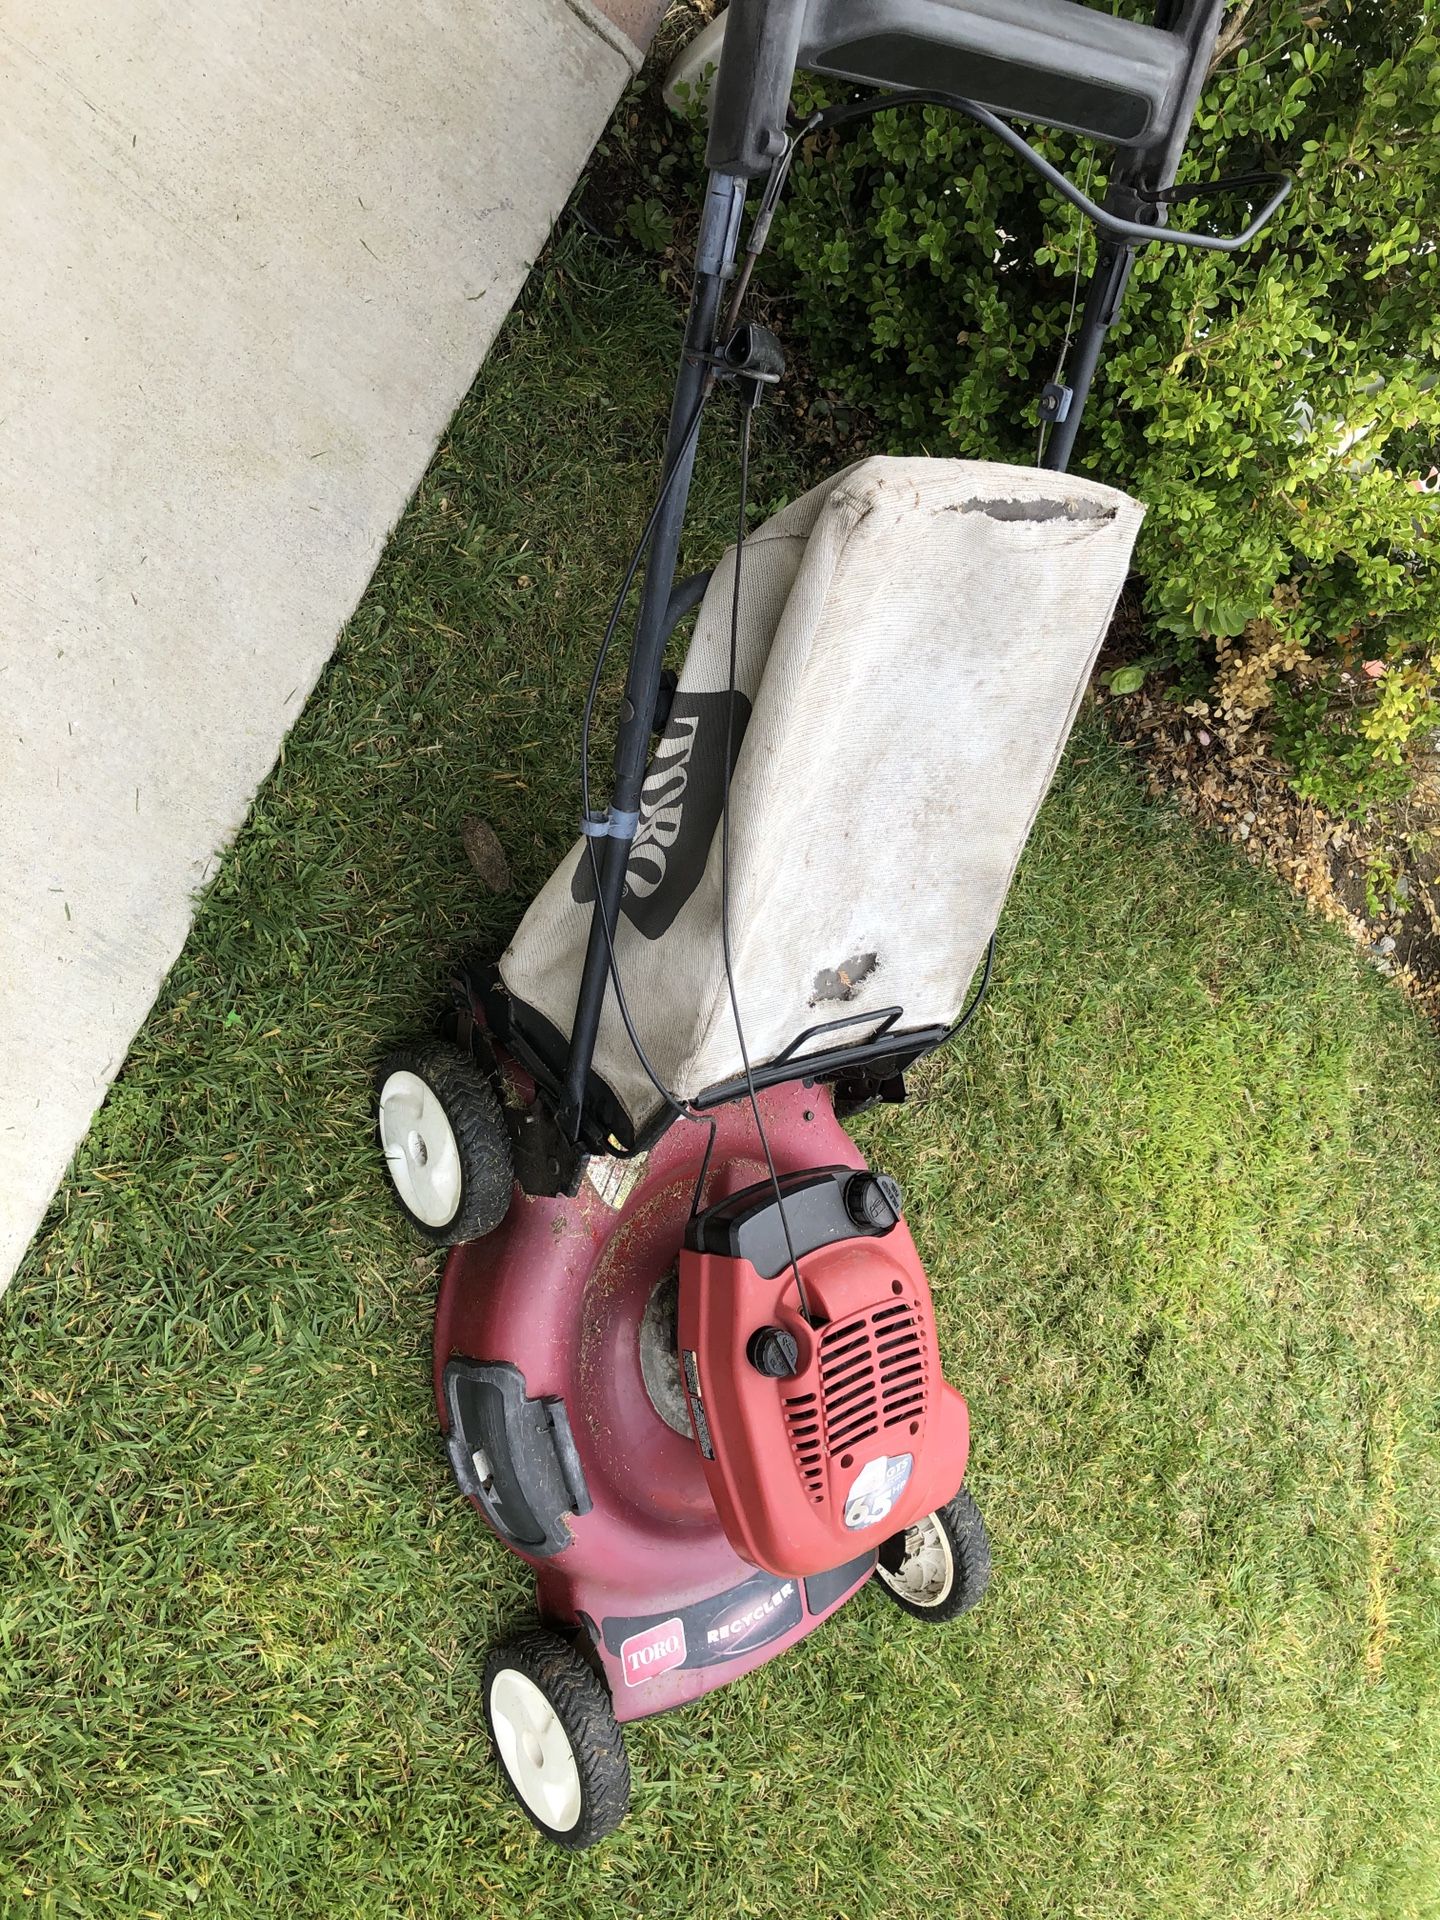 Toro self propelled lawn mower (working)